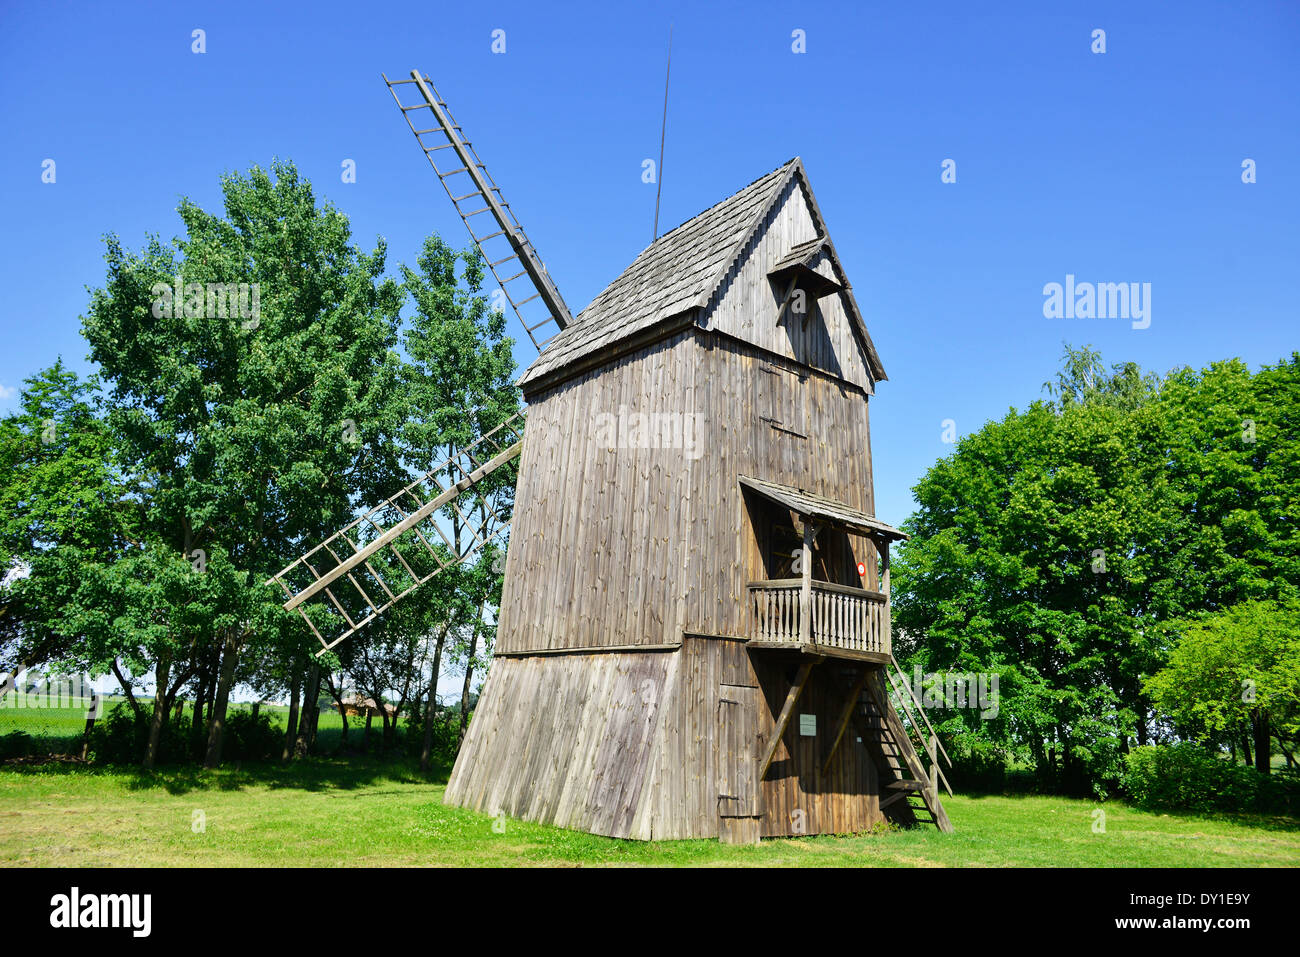 Parque Paisajístico de Lednica, molino de viento de madera más antigua de Polonia, región Wielkopolska, Polonia Foto de stock